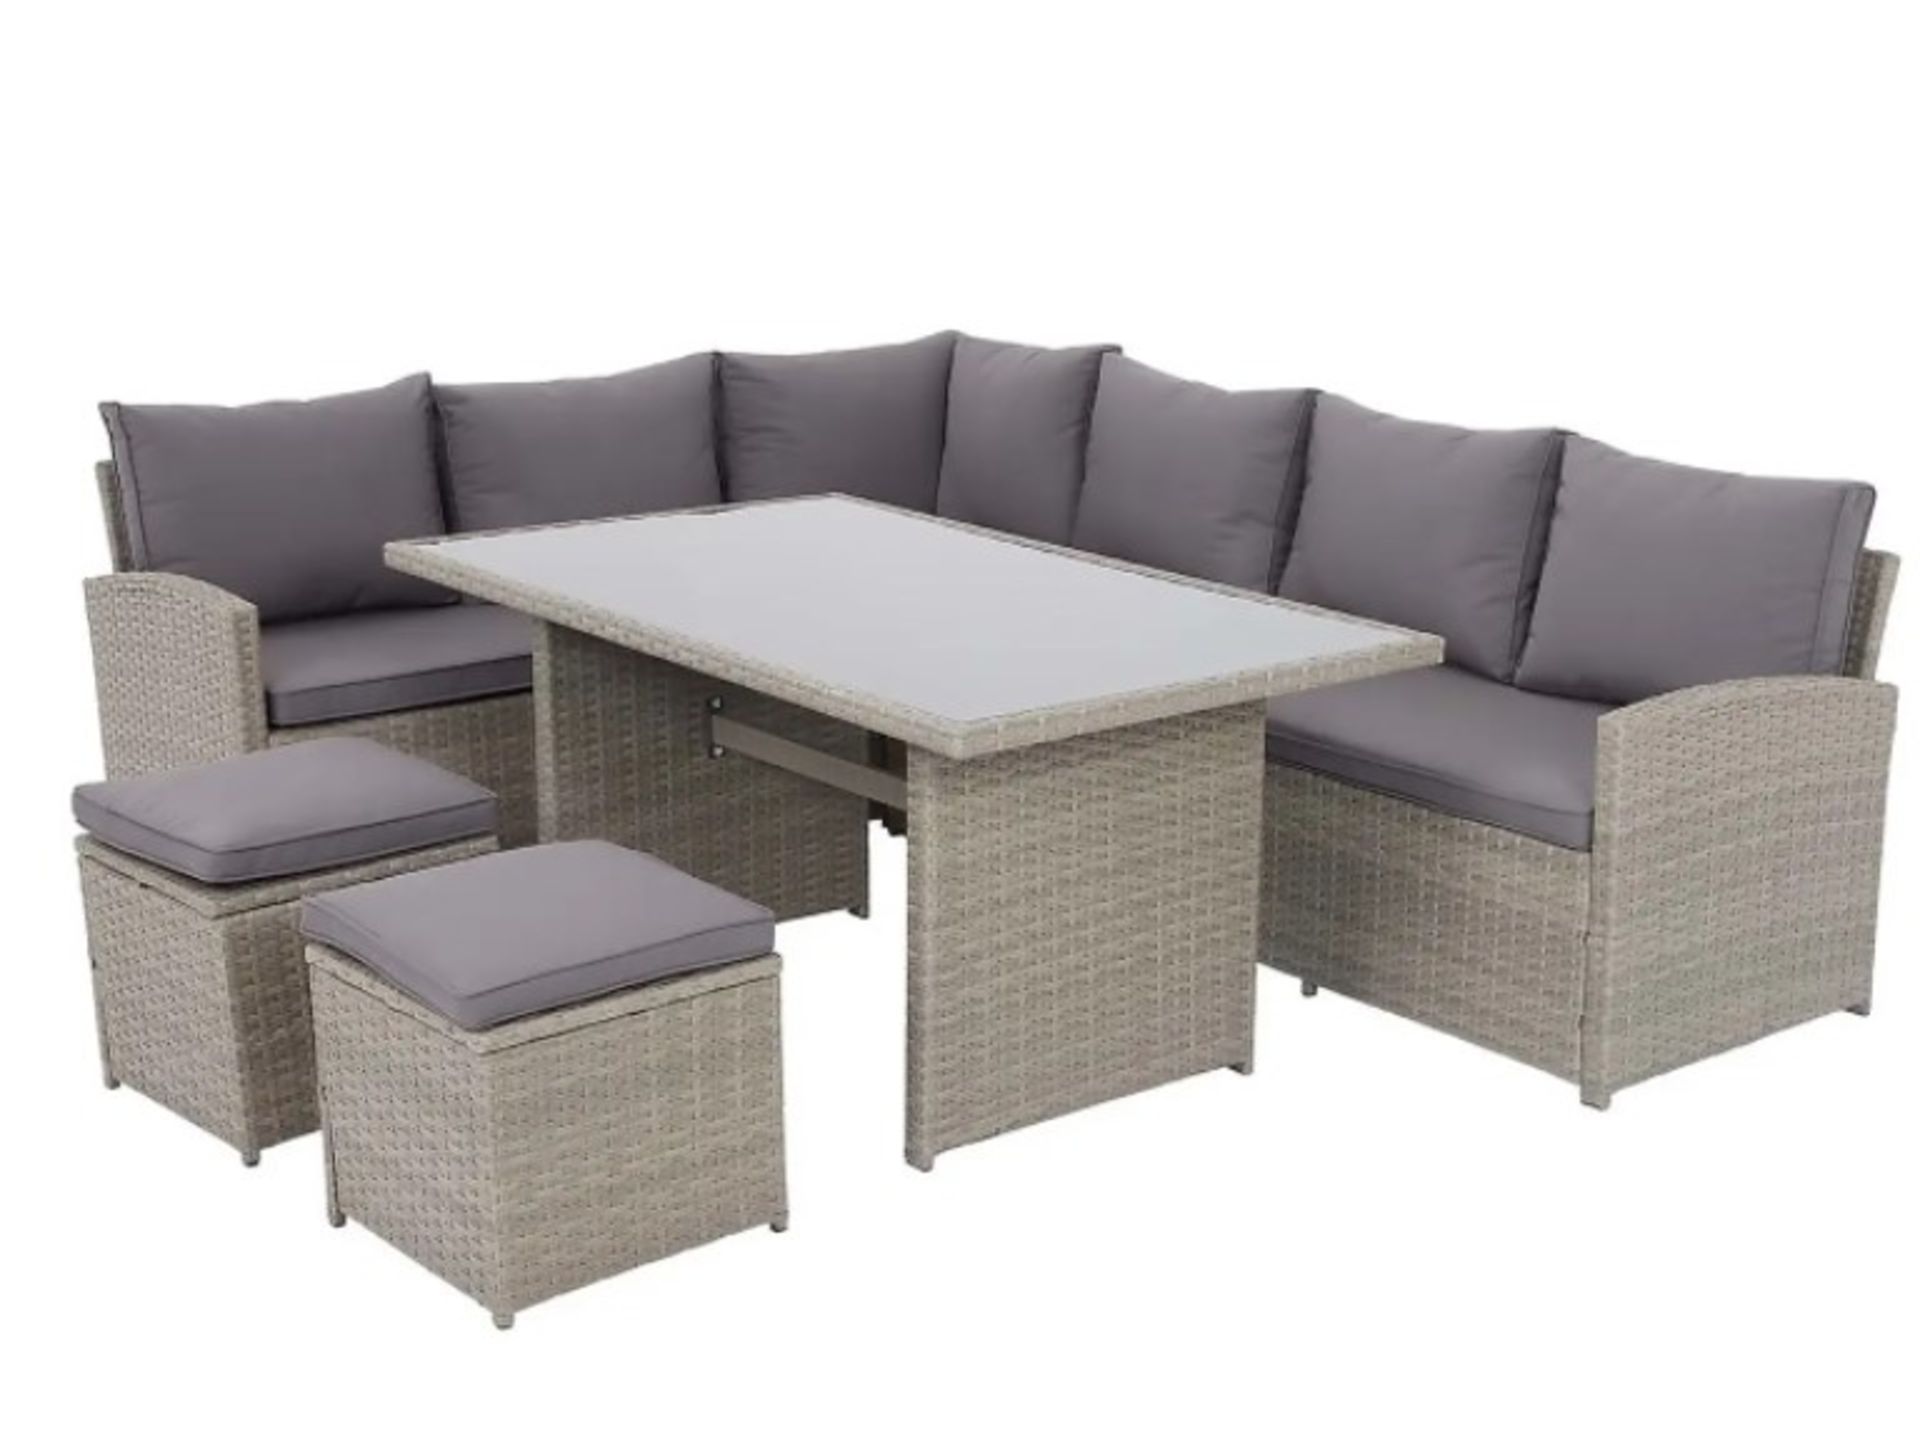 (P14) 1x Matara Rattan Corner Sofa Dining Garden Furniture Set RRP £700. (Sofa: H69x W178x D66cm). - Image 5 of 7